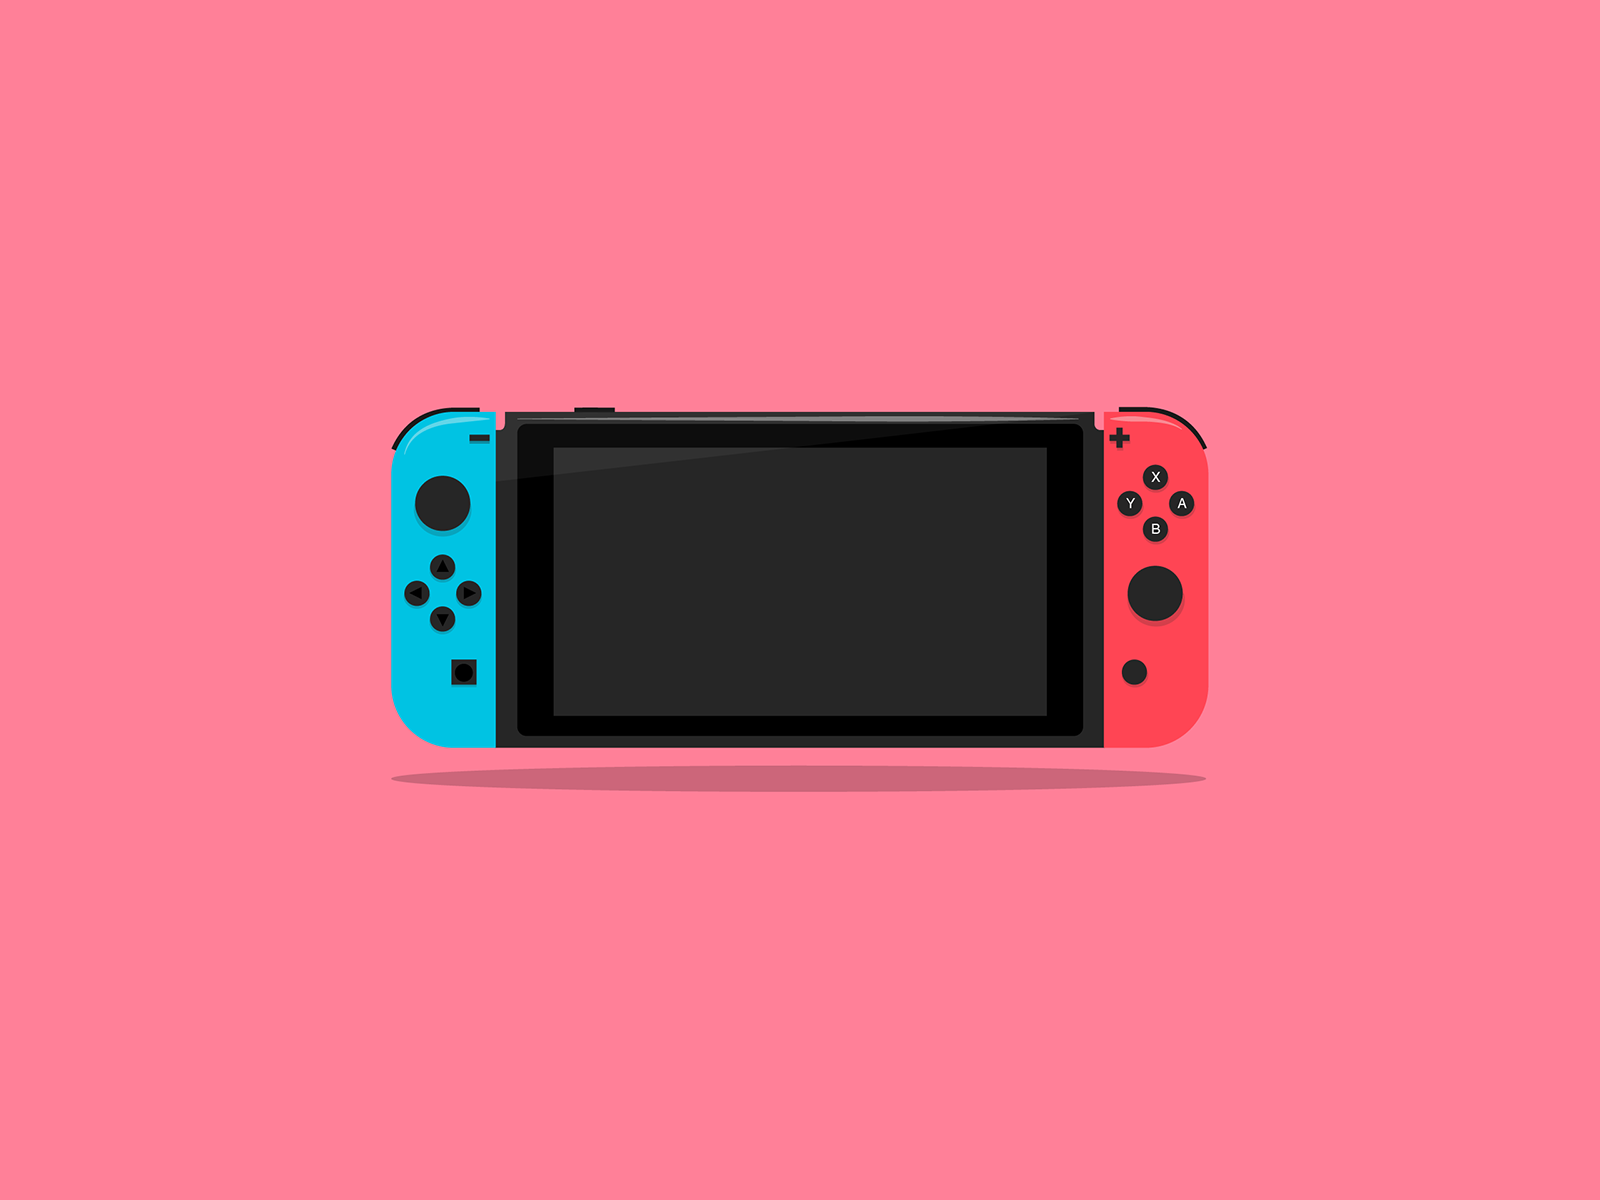 Erkende valgfri modtagende Nintendo Switch Illustration by Julien Vier on Dribbble